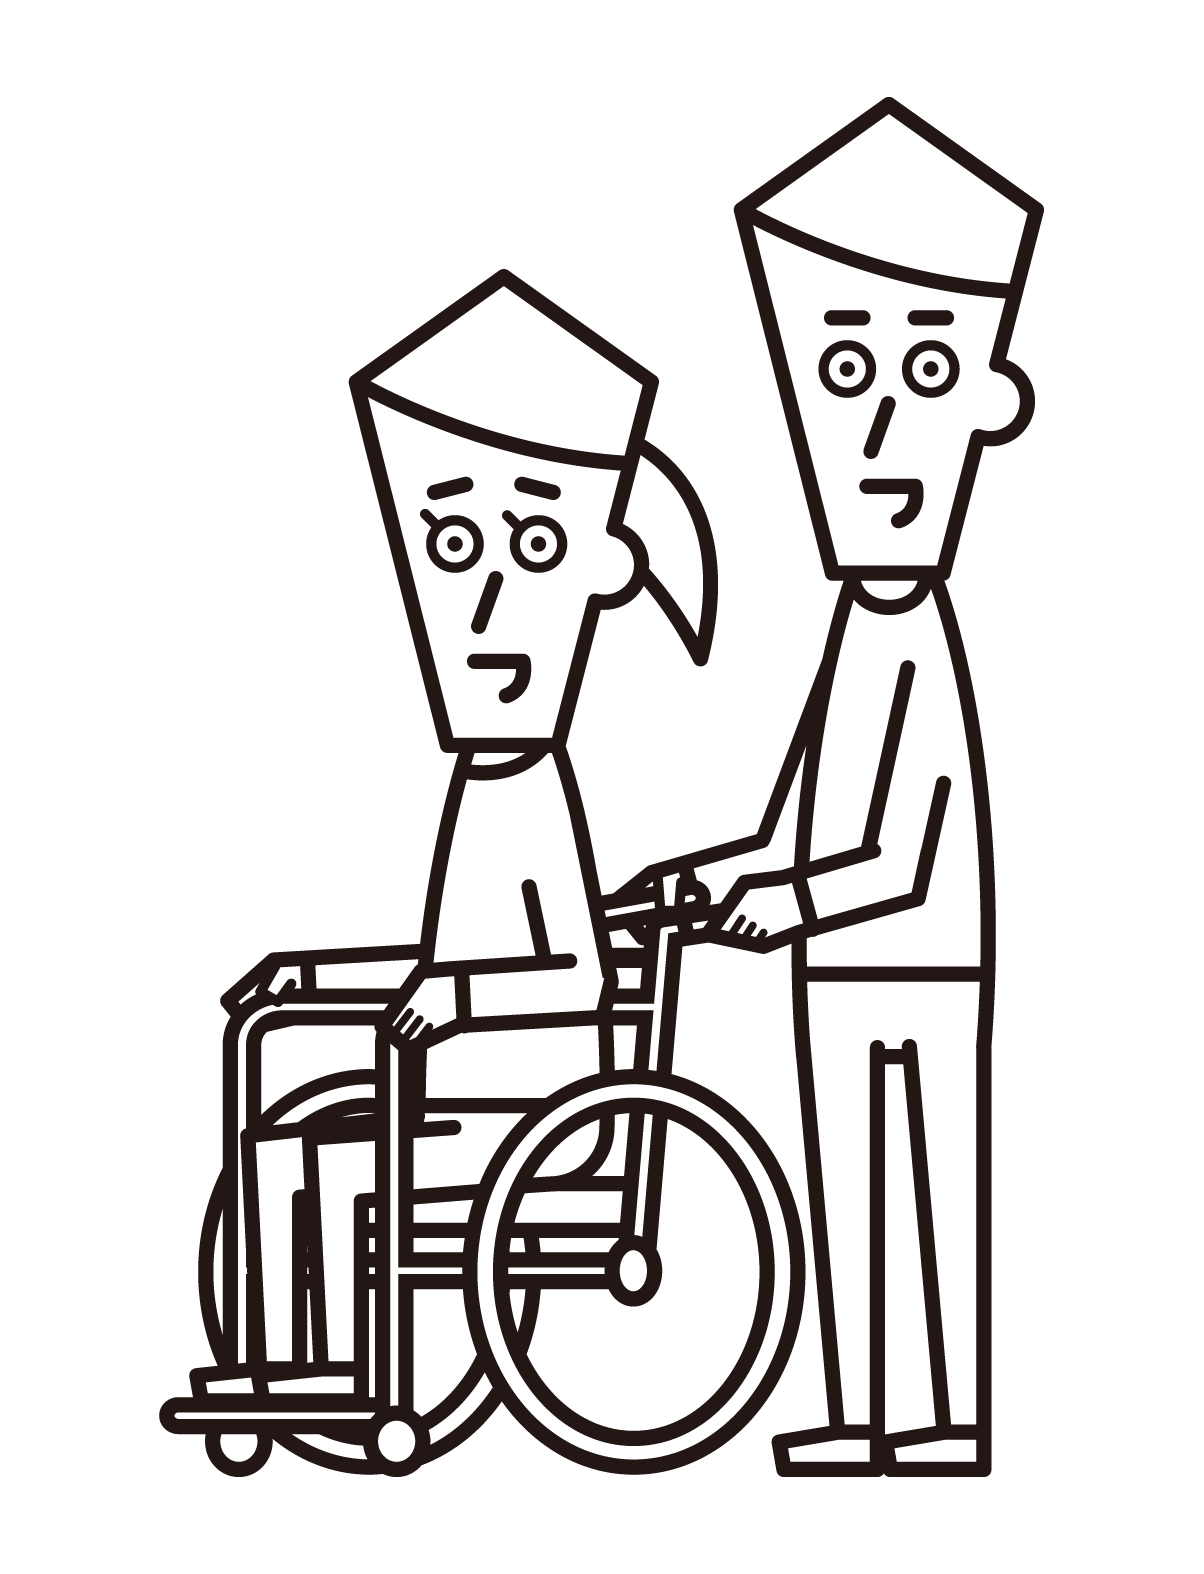 휠체어를 탄 사람(여성)과 카트를 타는 사람(남성)의 일러스트